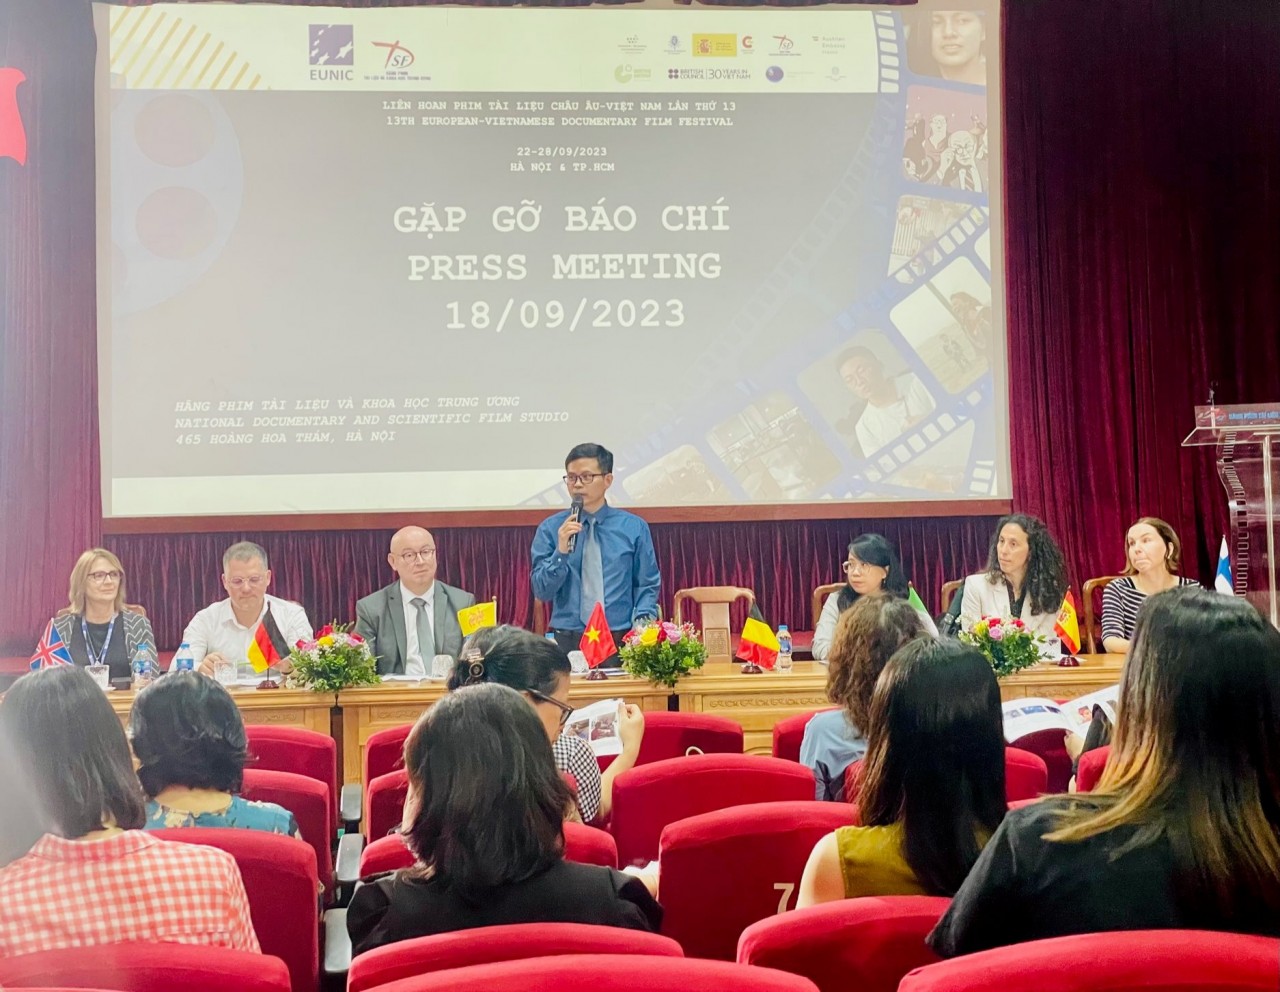 Bảo vệ môi trường: Chủ đề nổi bật của Liên hoan phim tài liệu châu Âu - Việt Nam lần thứ 13